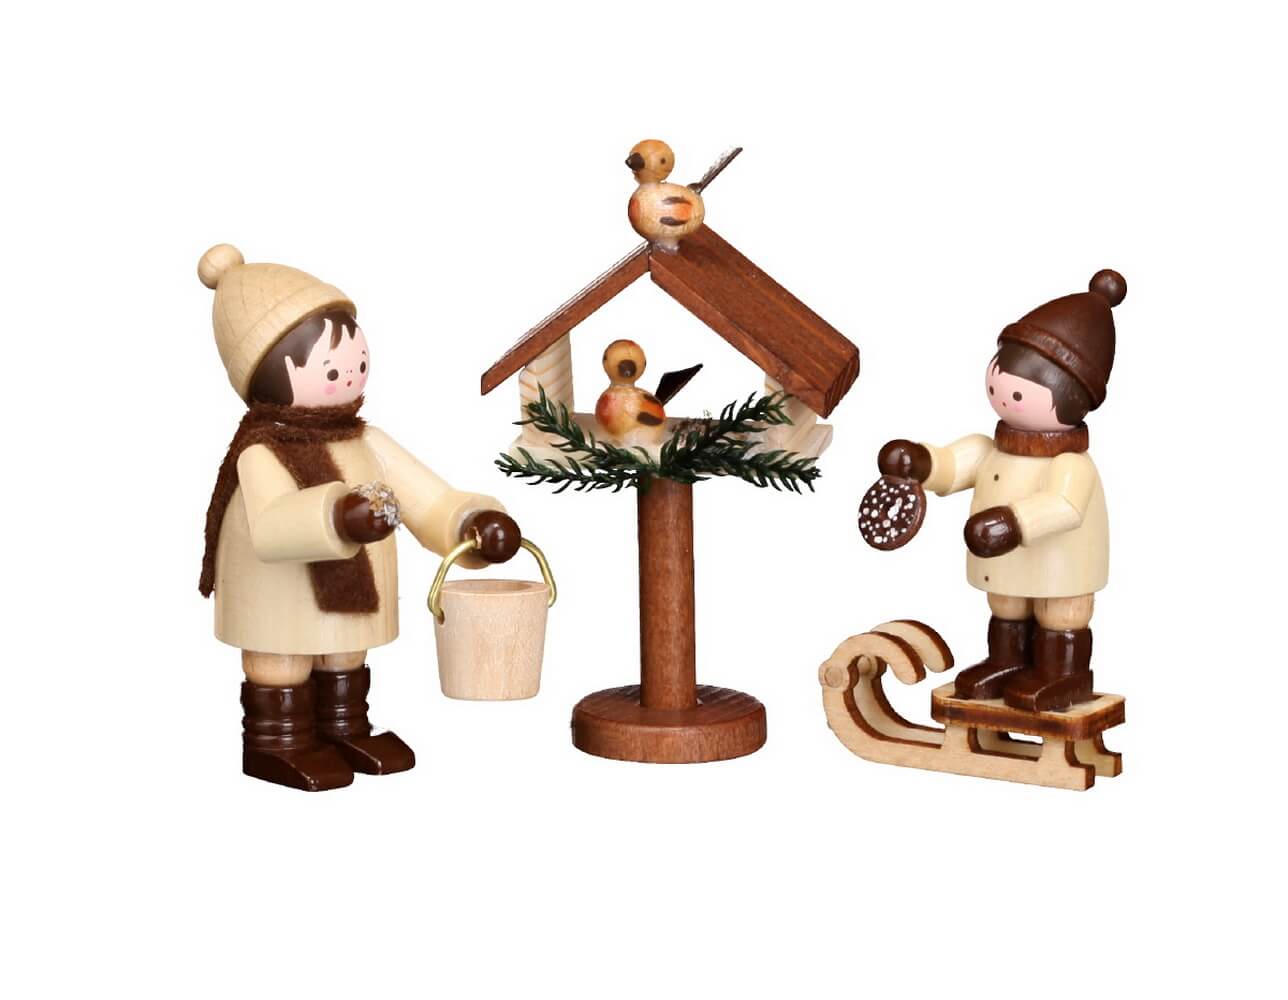 Holzfigur Romy Thiel Weihnachtsmarktbude Volkskunst Neuware Original Erzgebirge 